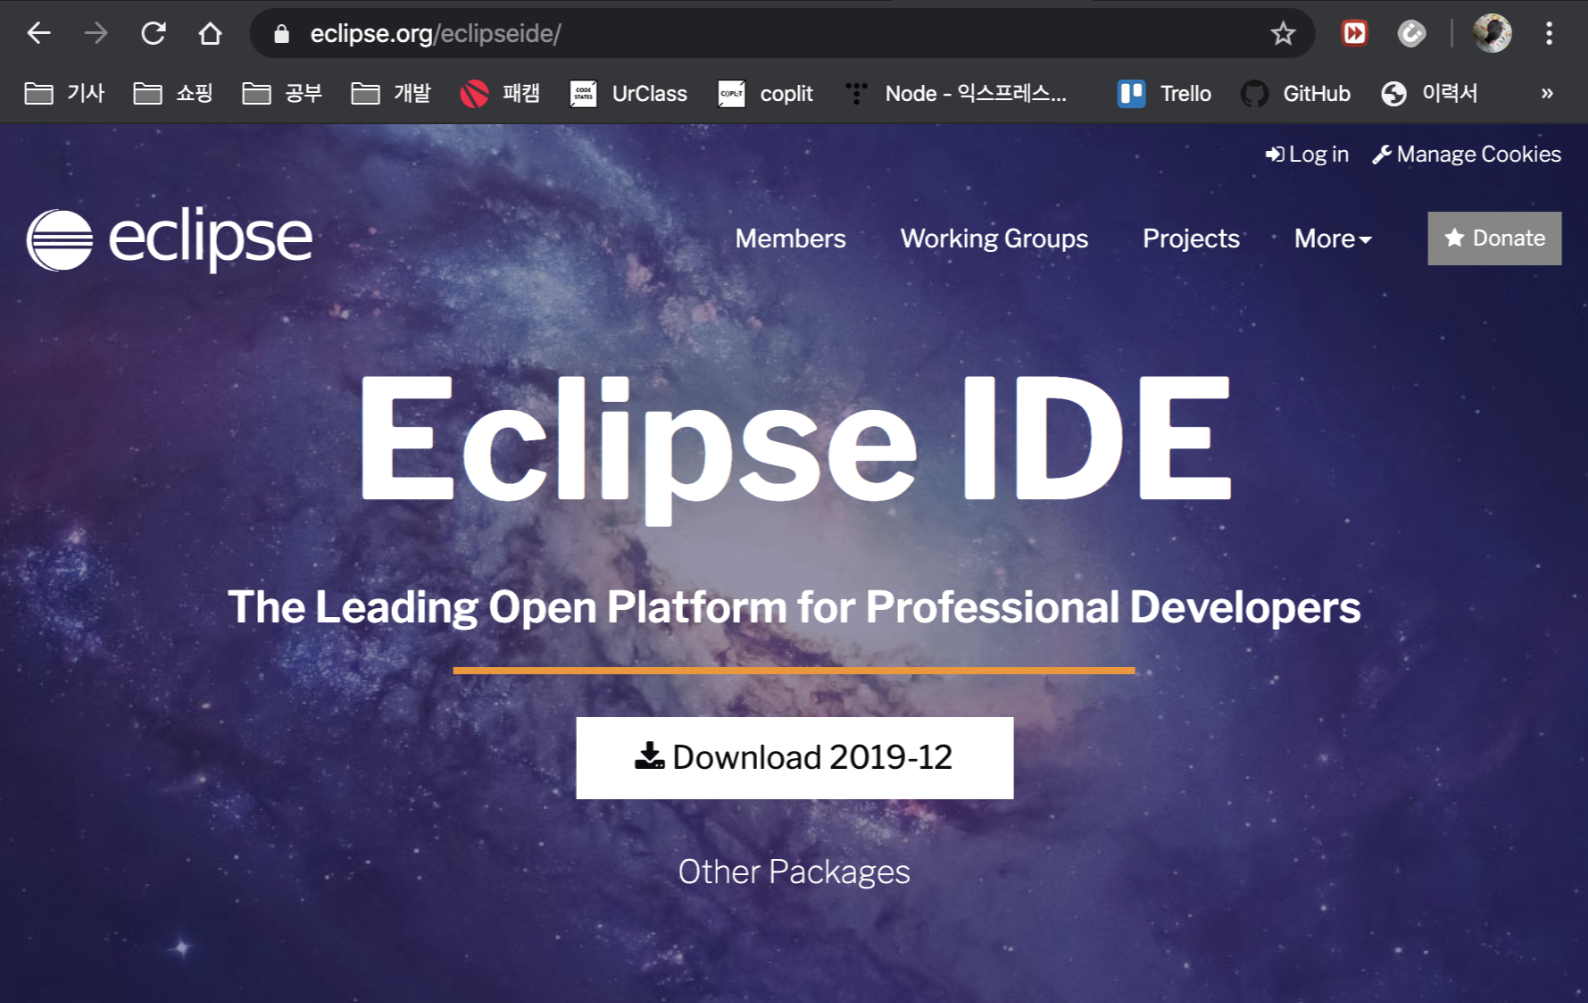 eclipse enterprise edition for mac